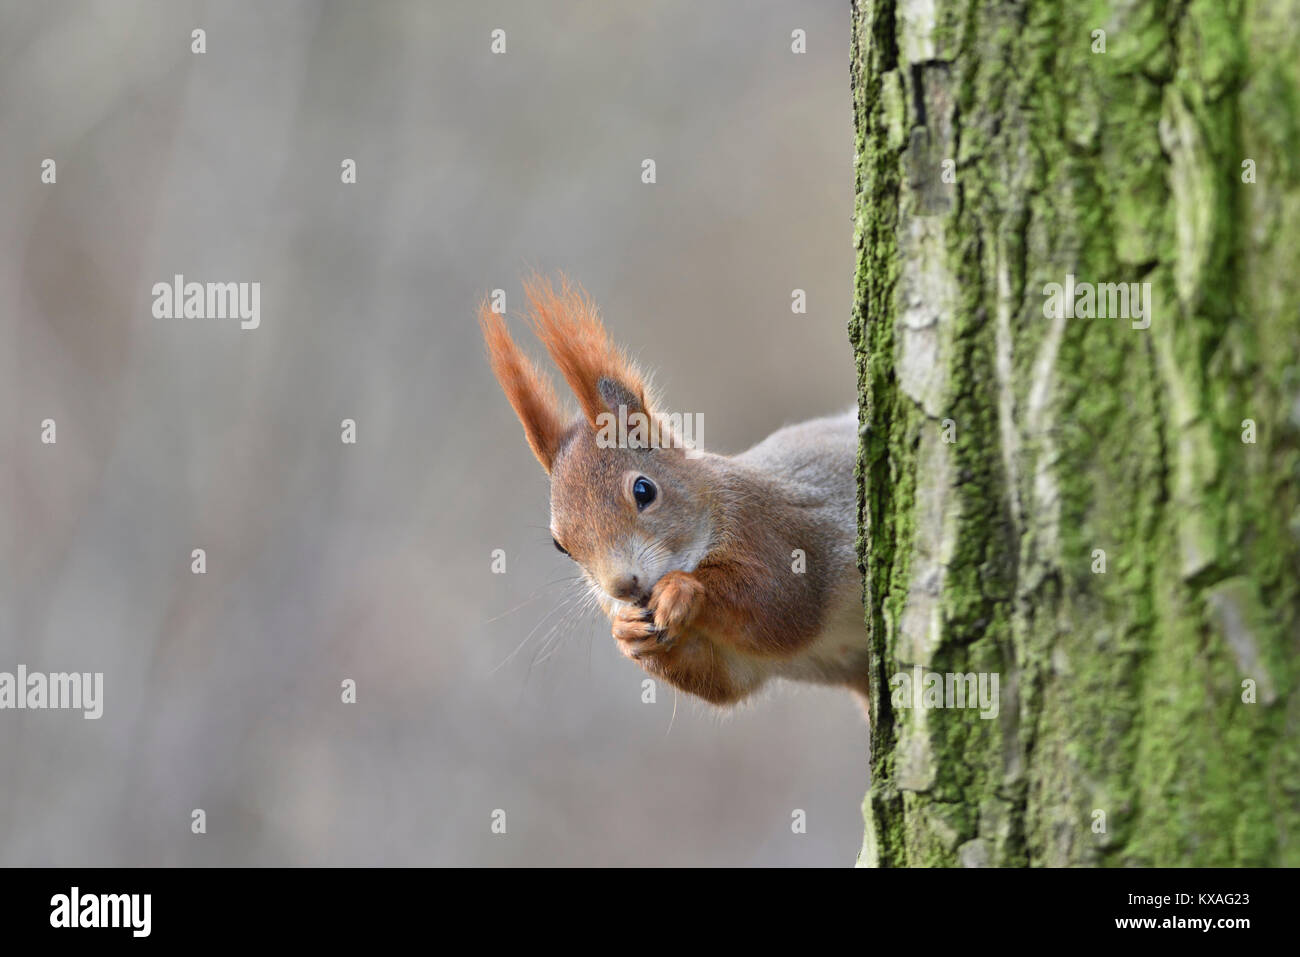 Eurasian écureuil roux (Sciurus vulgaris) regarde de derrière un arbre, Saxe, Allemagne Banque D'Images